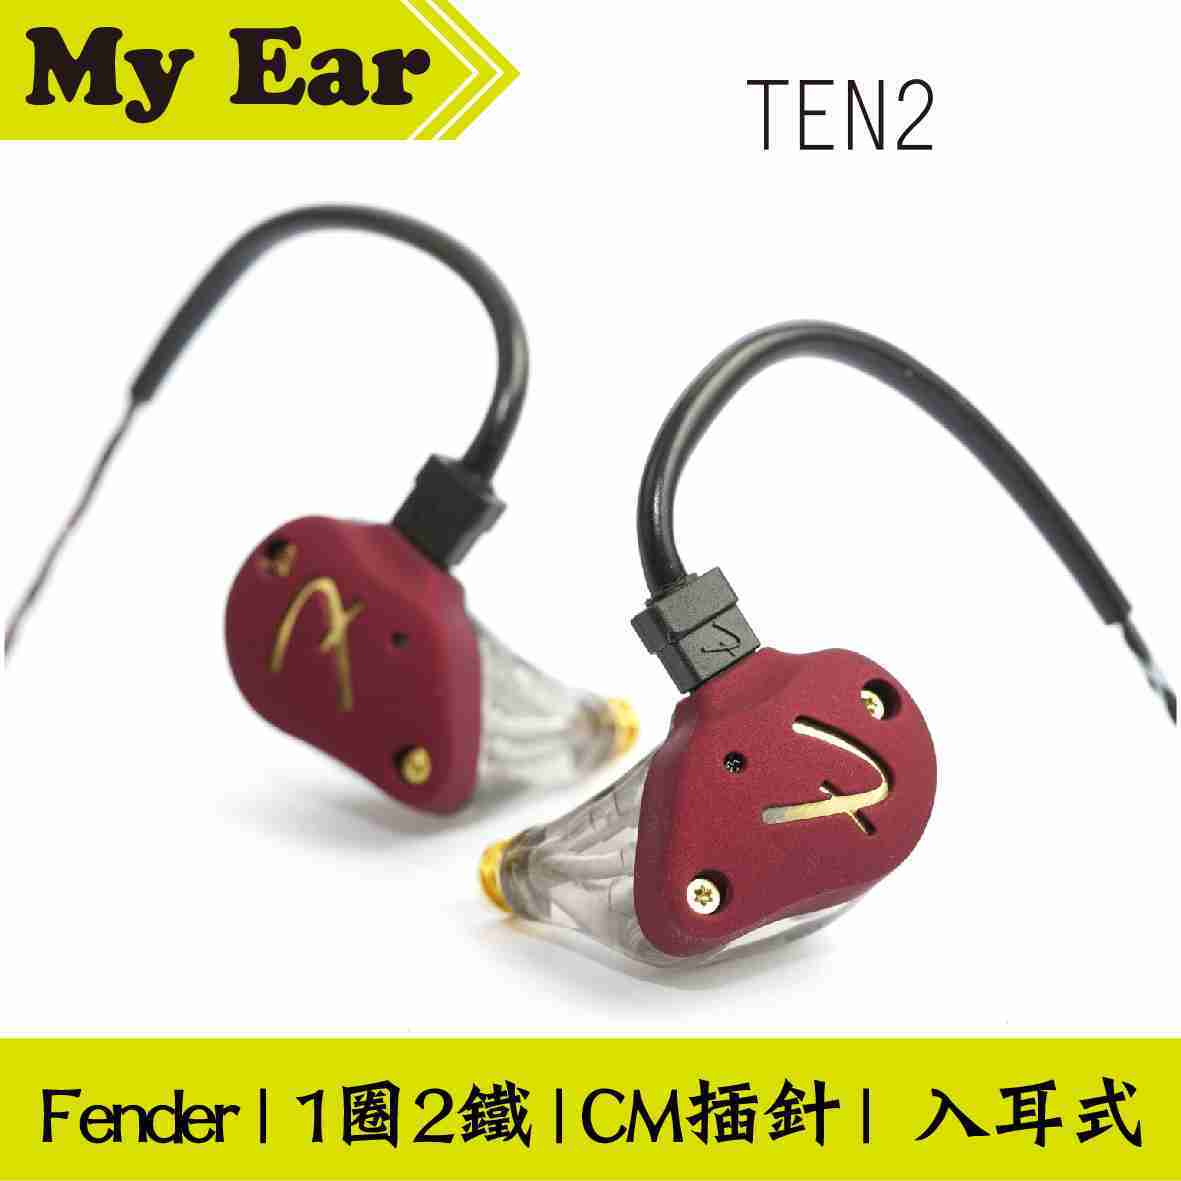 Fender TEN 2 美隊藍 1圈2鐵 混合 監聽 入耳式 進階 耳機 | My Ear 耳機專門店